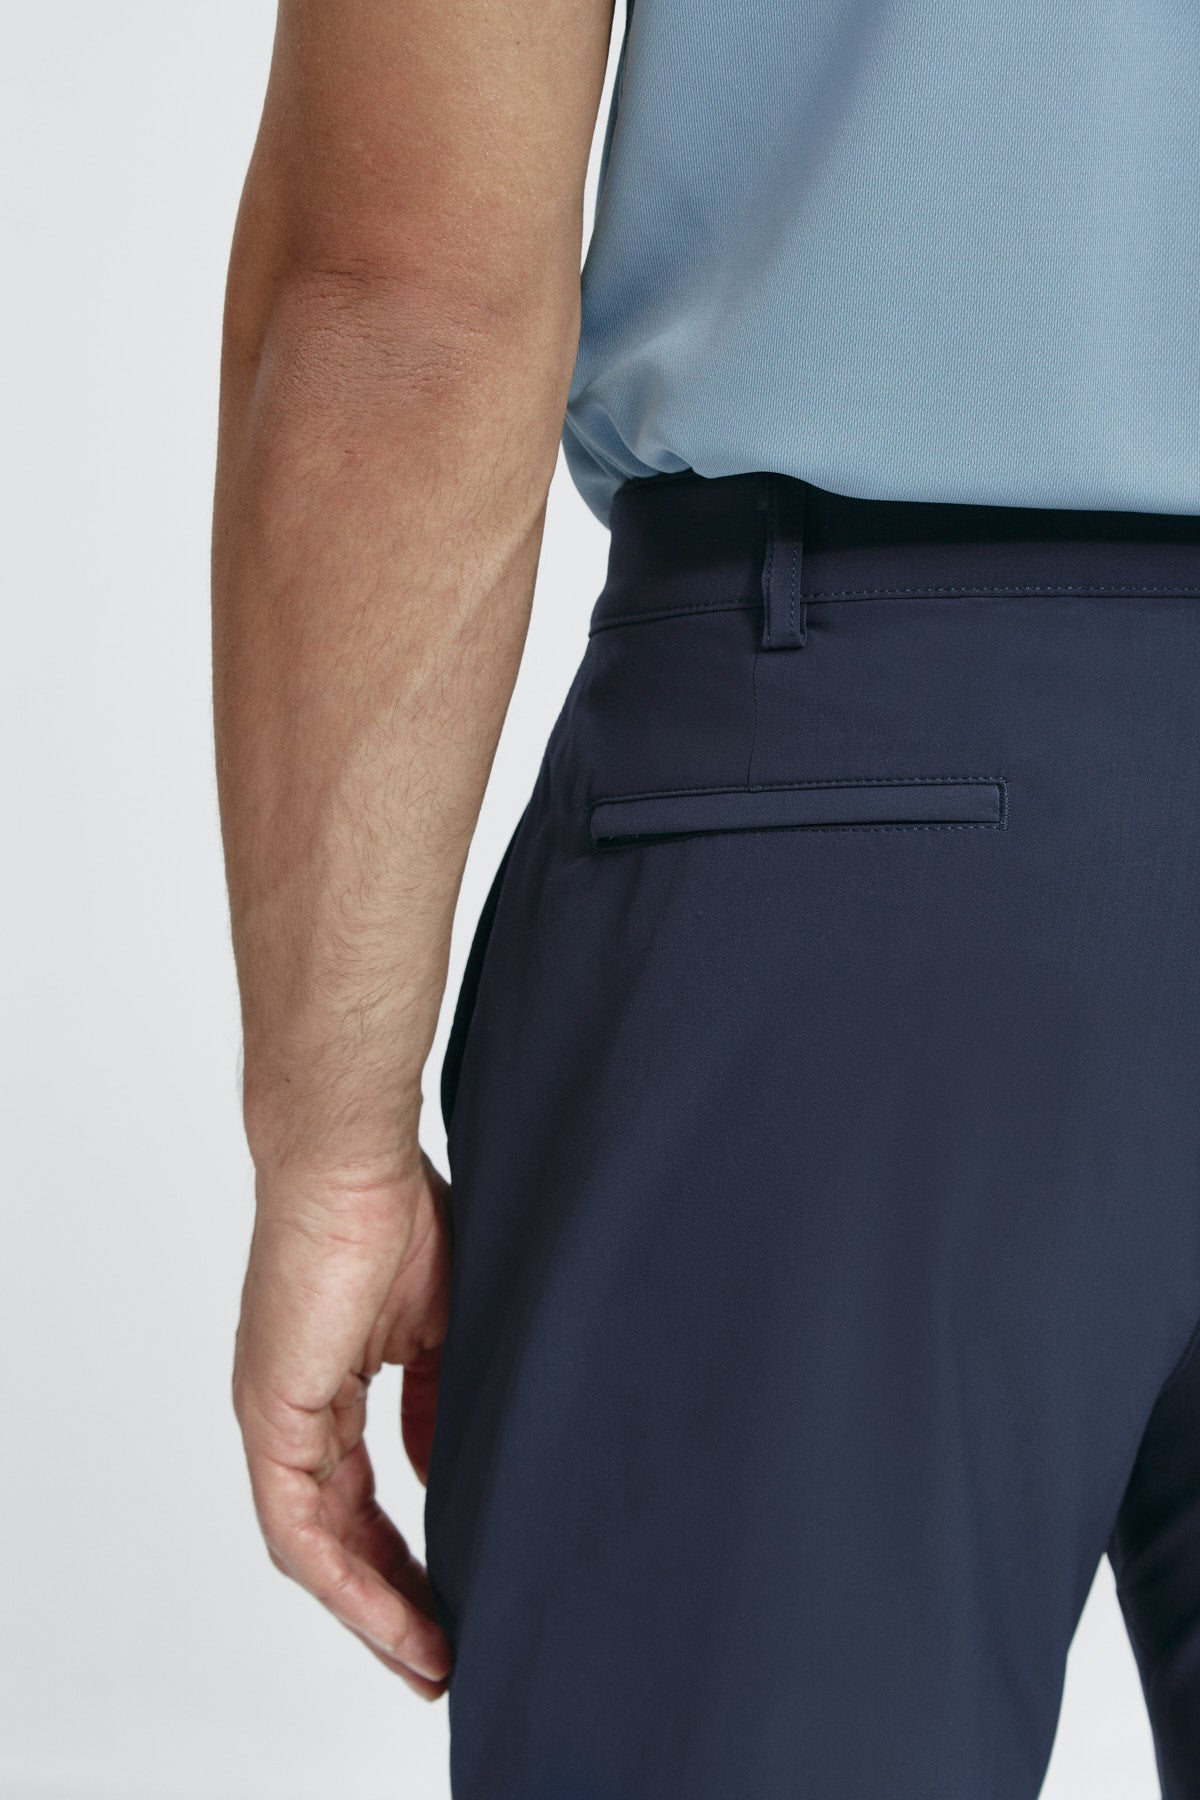 Pantalón chino regular azul marino para hombre con tecnología termorreguladora Coolmax. Foto detalle